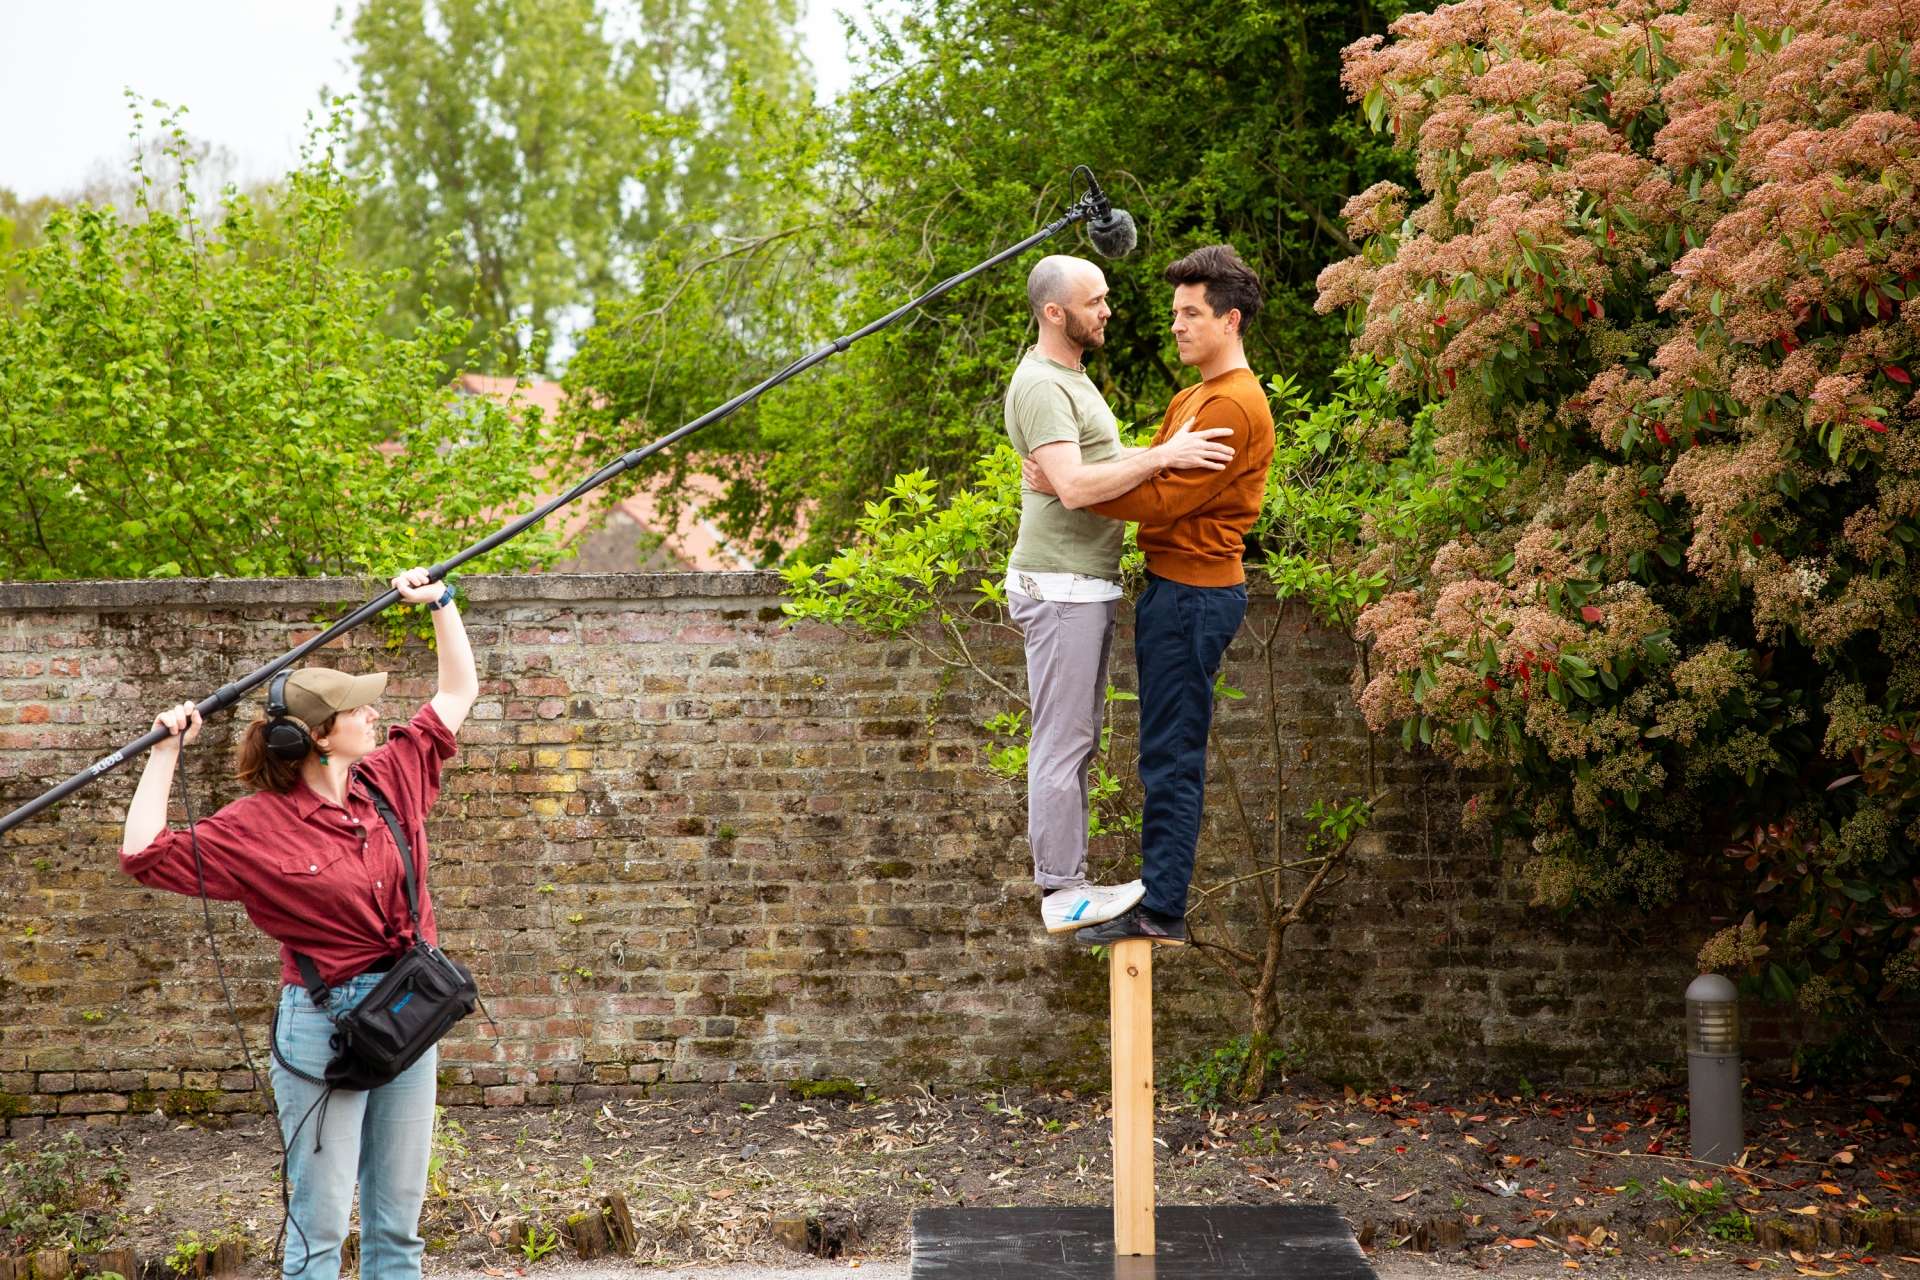 Deux hommes se tiennent debout sur un bastaing de bois